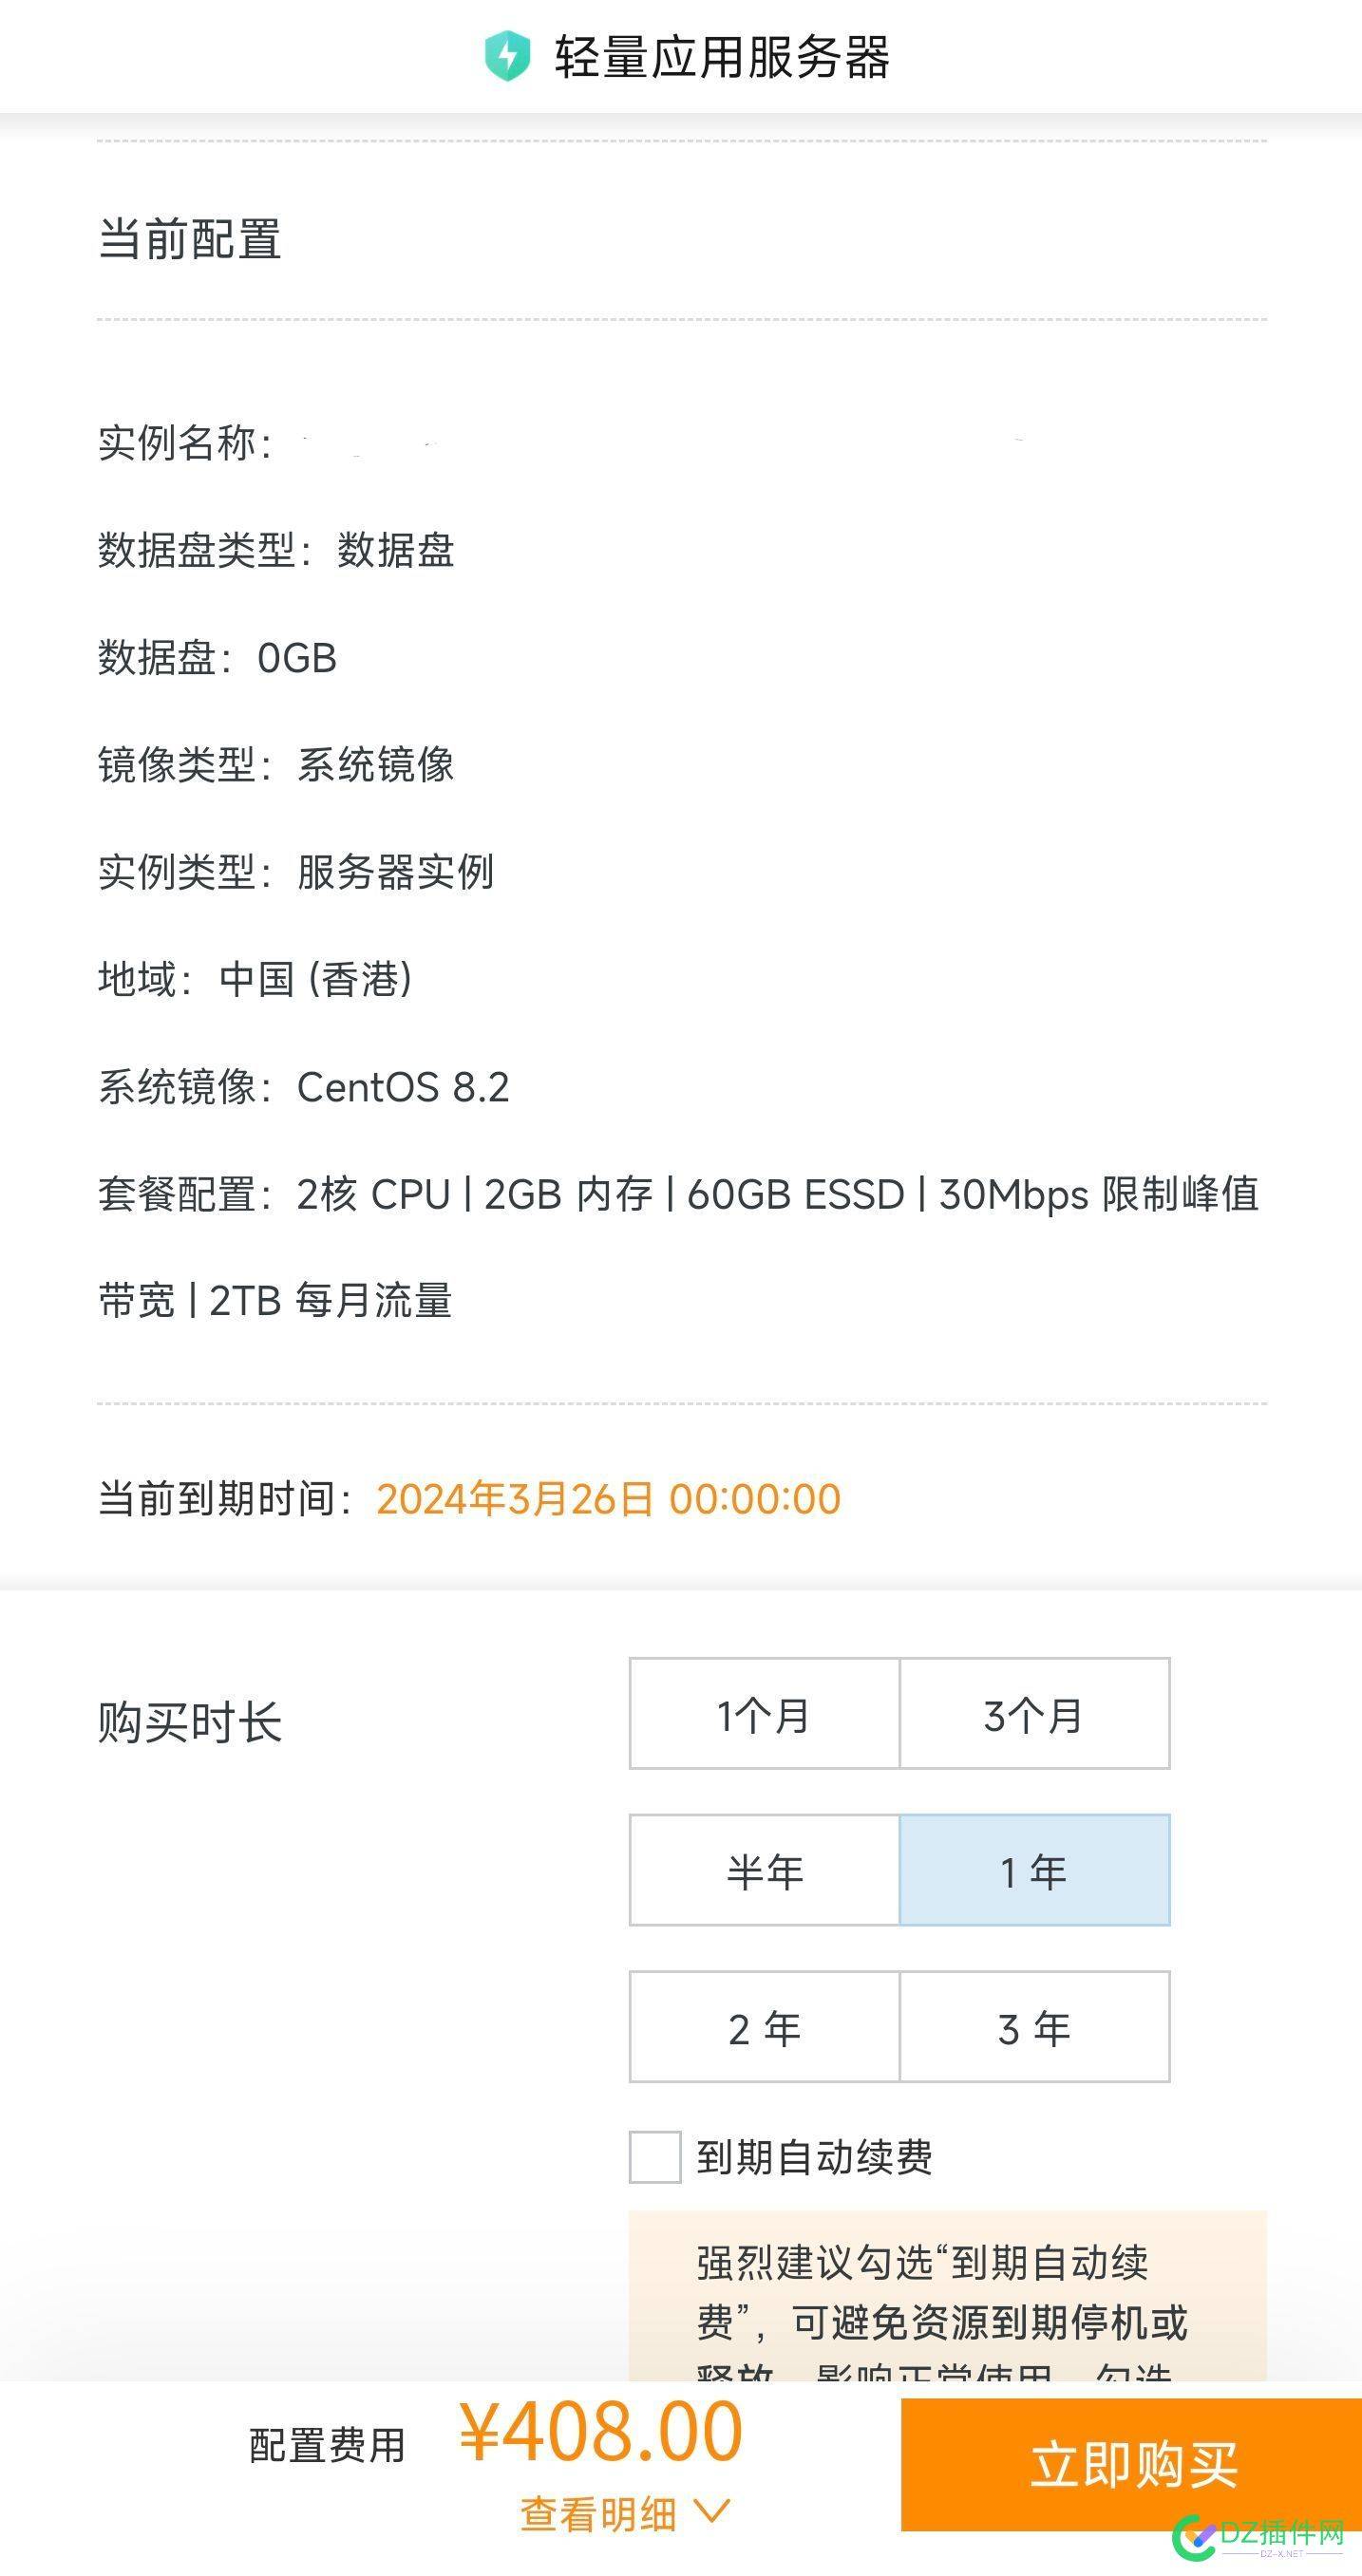 330元便宜出一年阿里云香港轻量服务器 便宜,一年,阿里,阿里云,香港